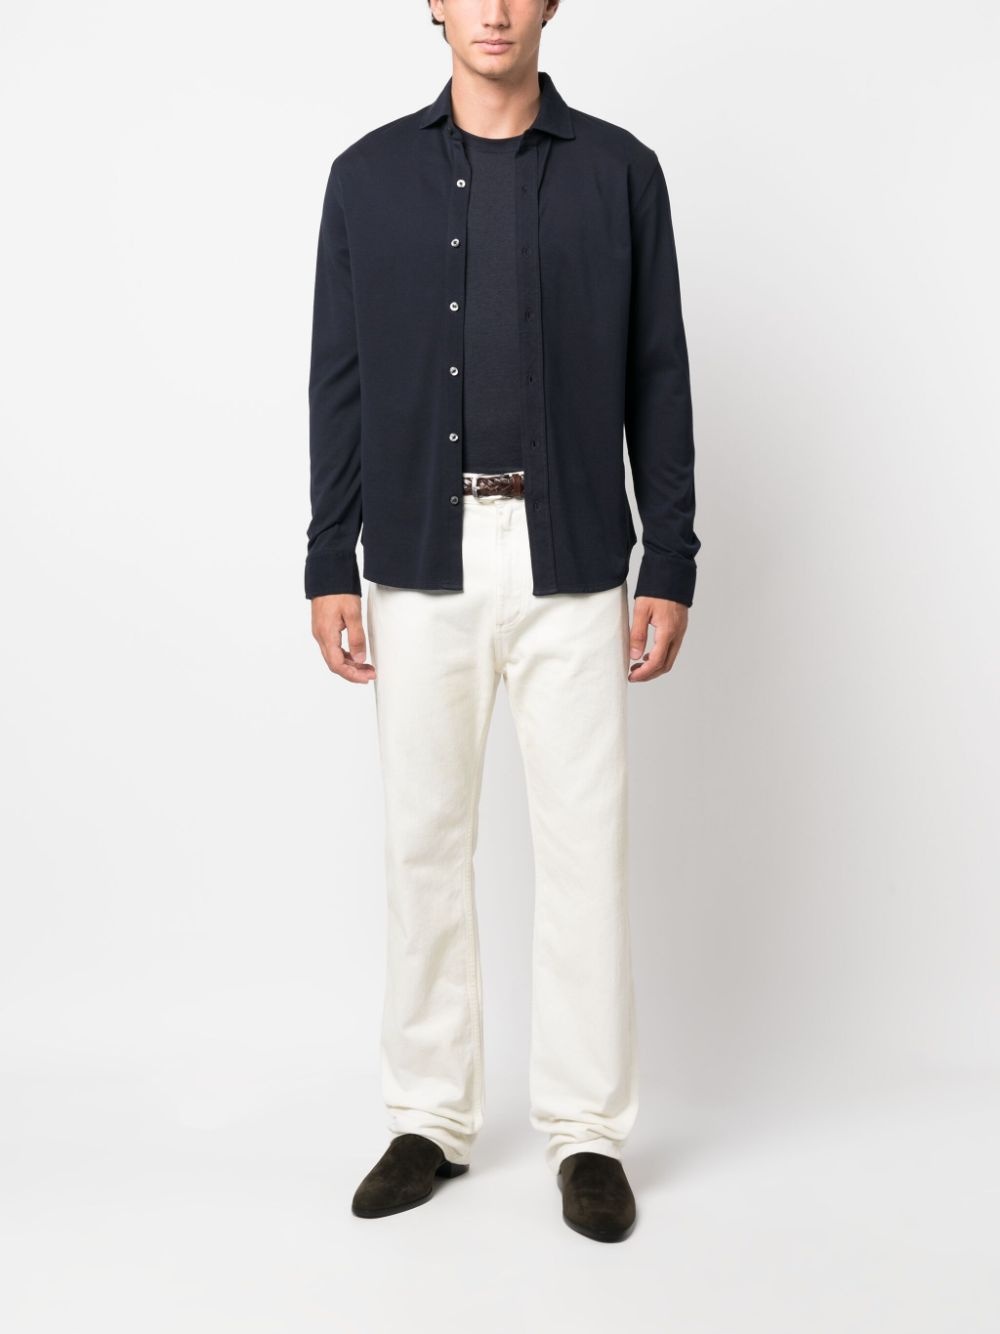 cutaway collar cotton shirt - 2